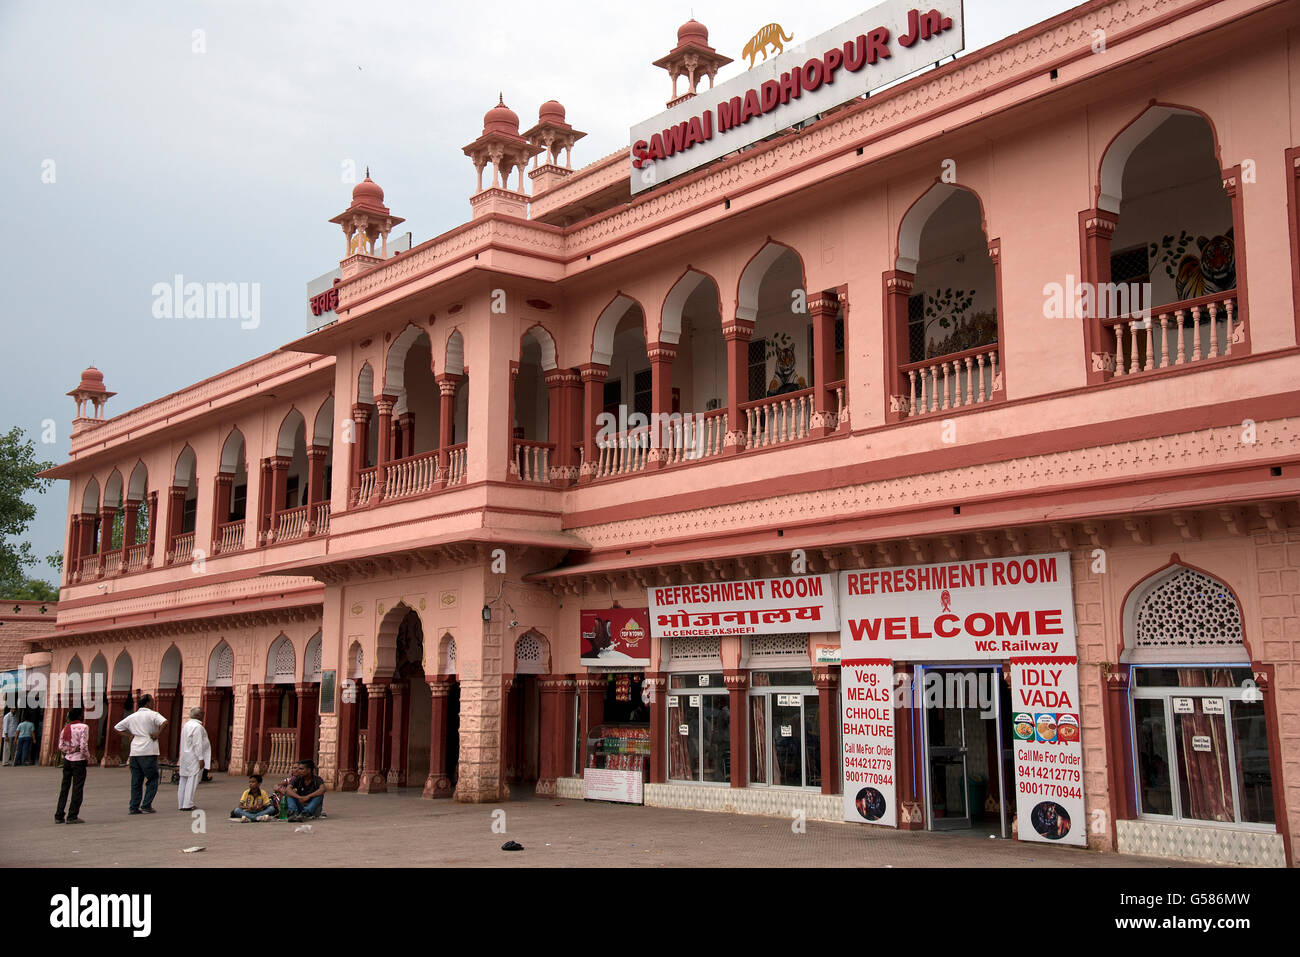 L'immagine di Sawai Madhopur stazione ferroviaria è stata presa in India Foto Stock